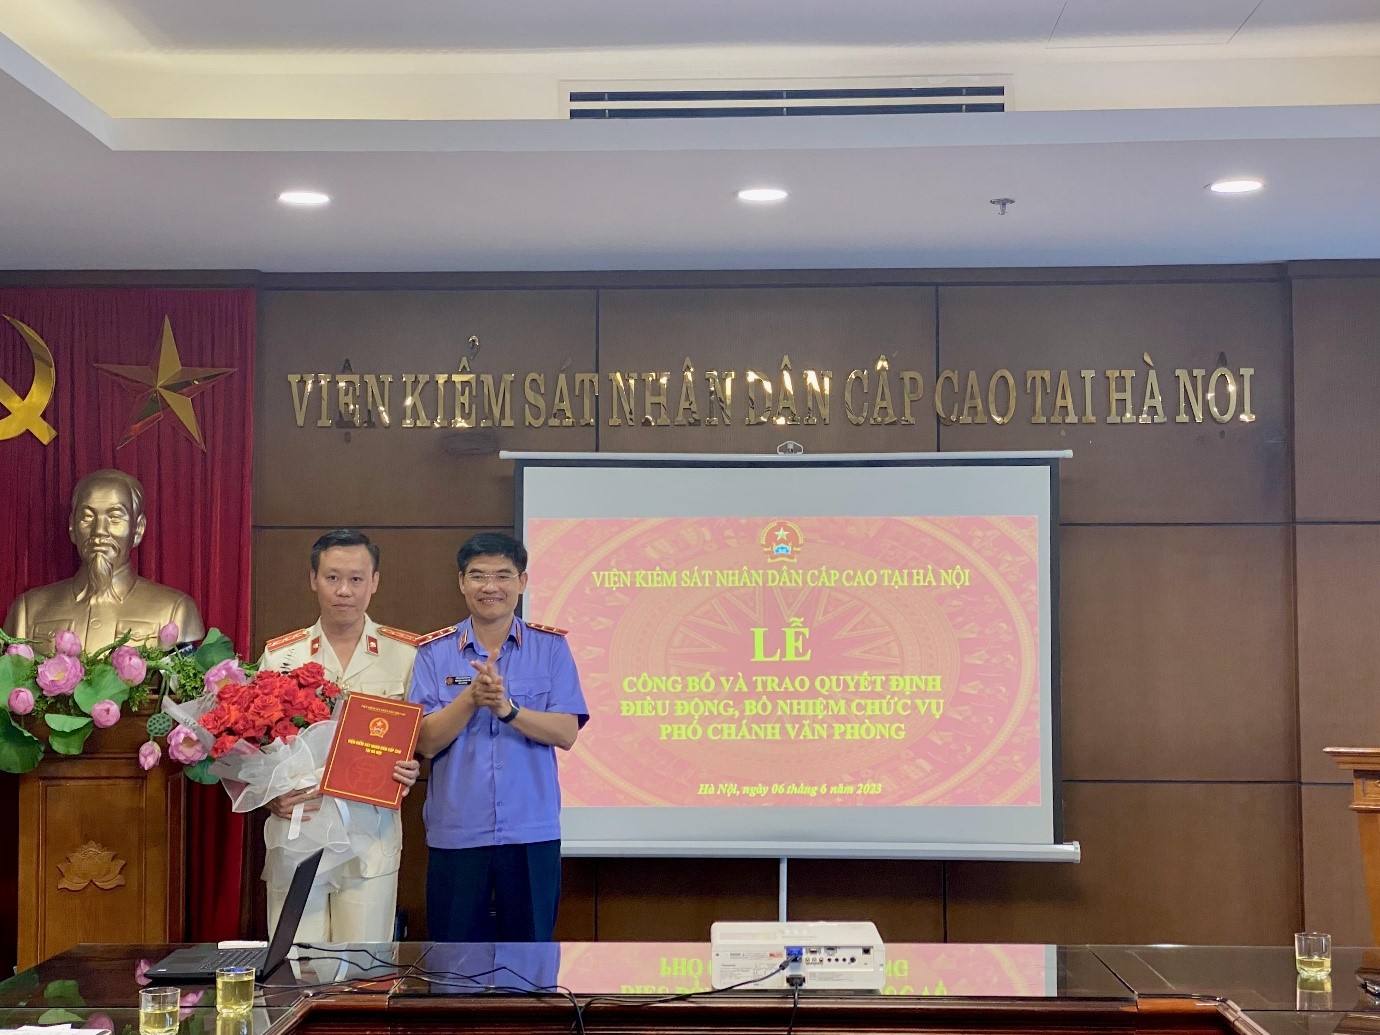 Lễ công bố và trao quyết định điều động, bổ nhiệm chức vụ Phó Chánh Văn phòng Viện kiểm sát nhân dân cấp cao tại Hà Nội.